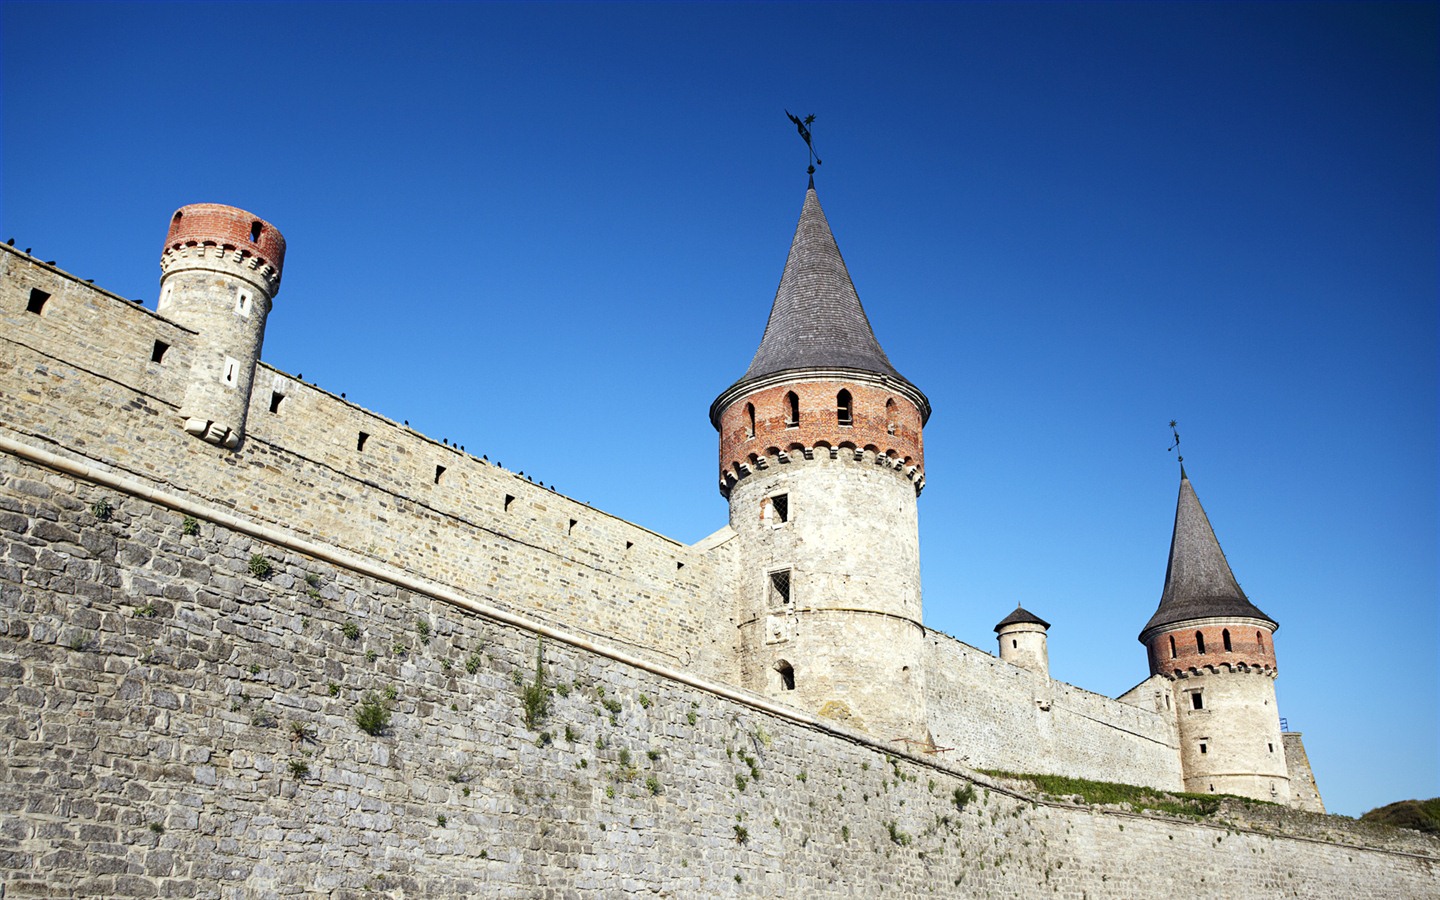 Fondos de pantalla de Windows 7: Castillos de Europa #21 - 1440x900